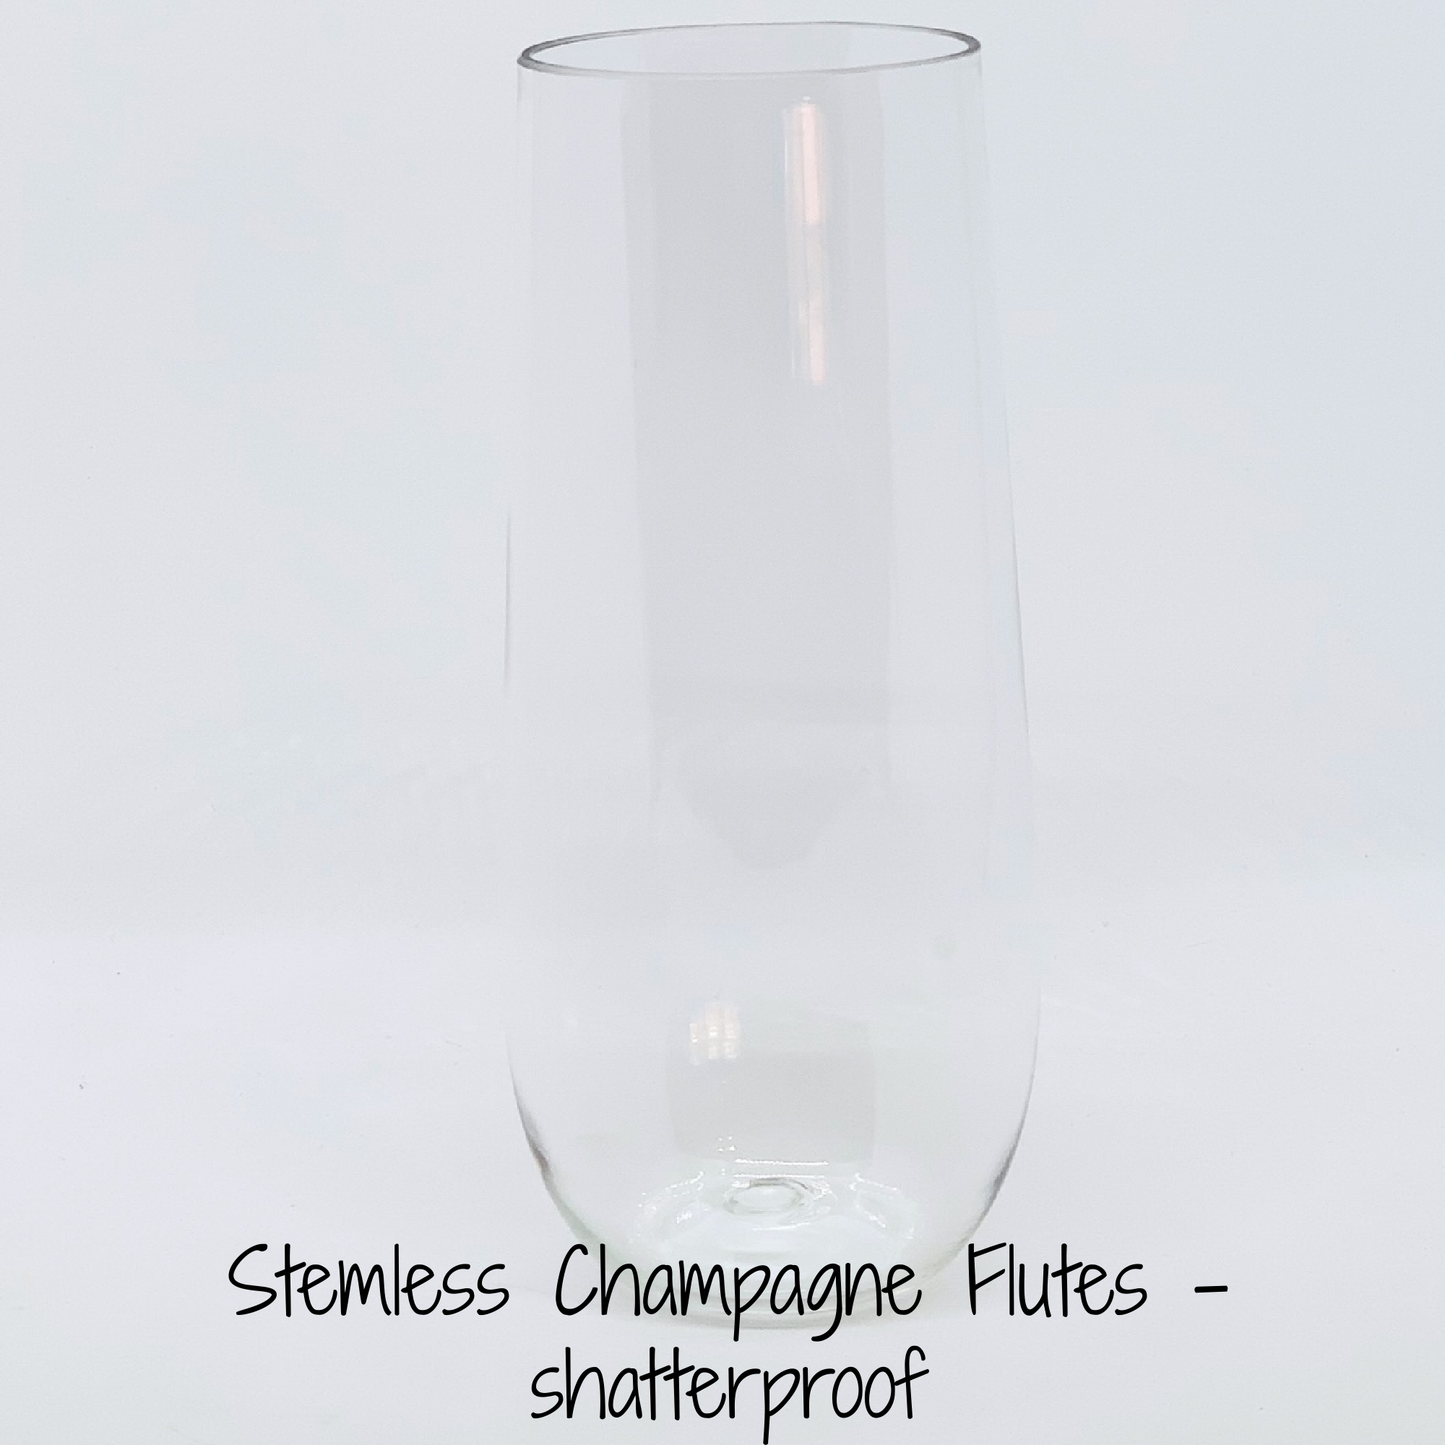 Triton Stemless Champagne Flute - 236ml